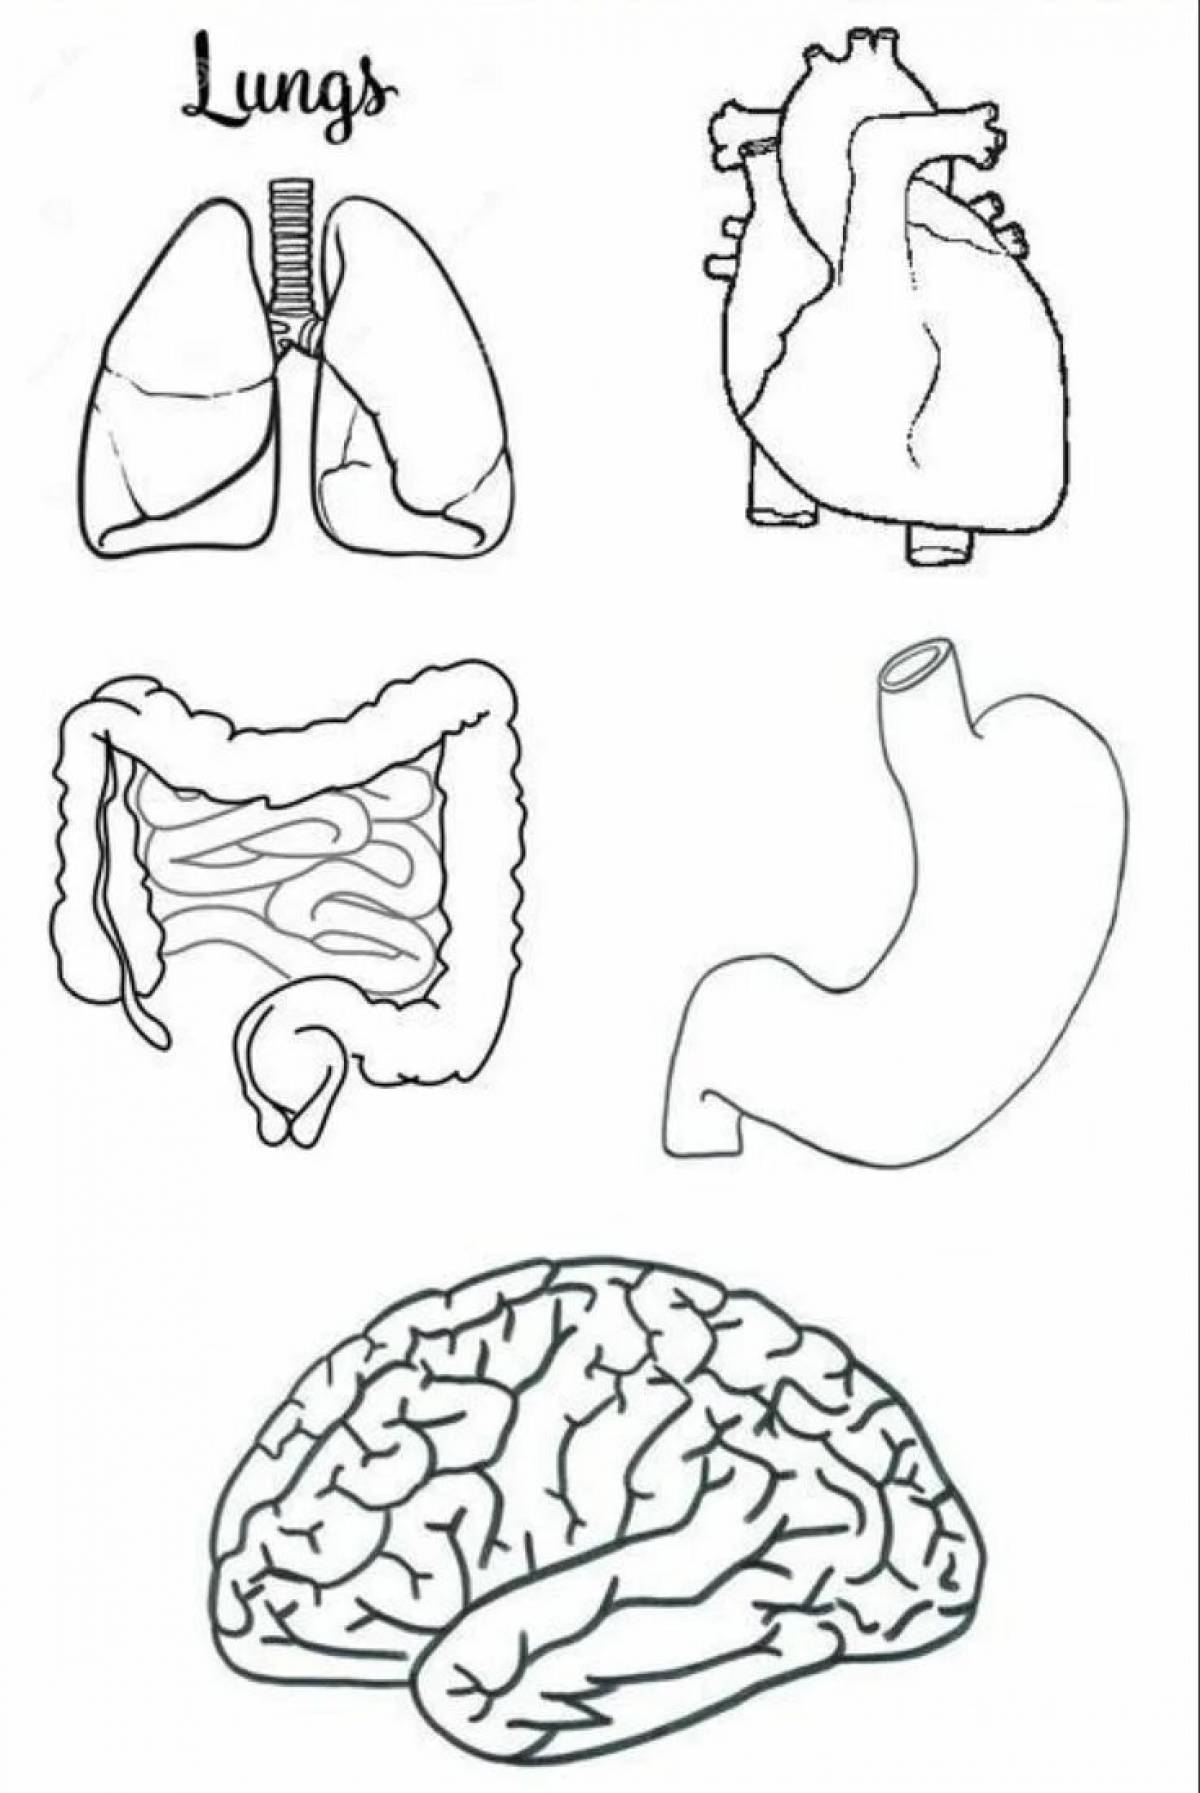 Human structure internal organs #13